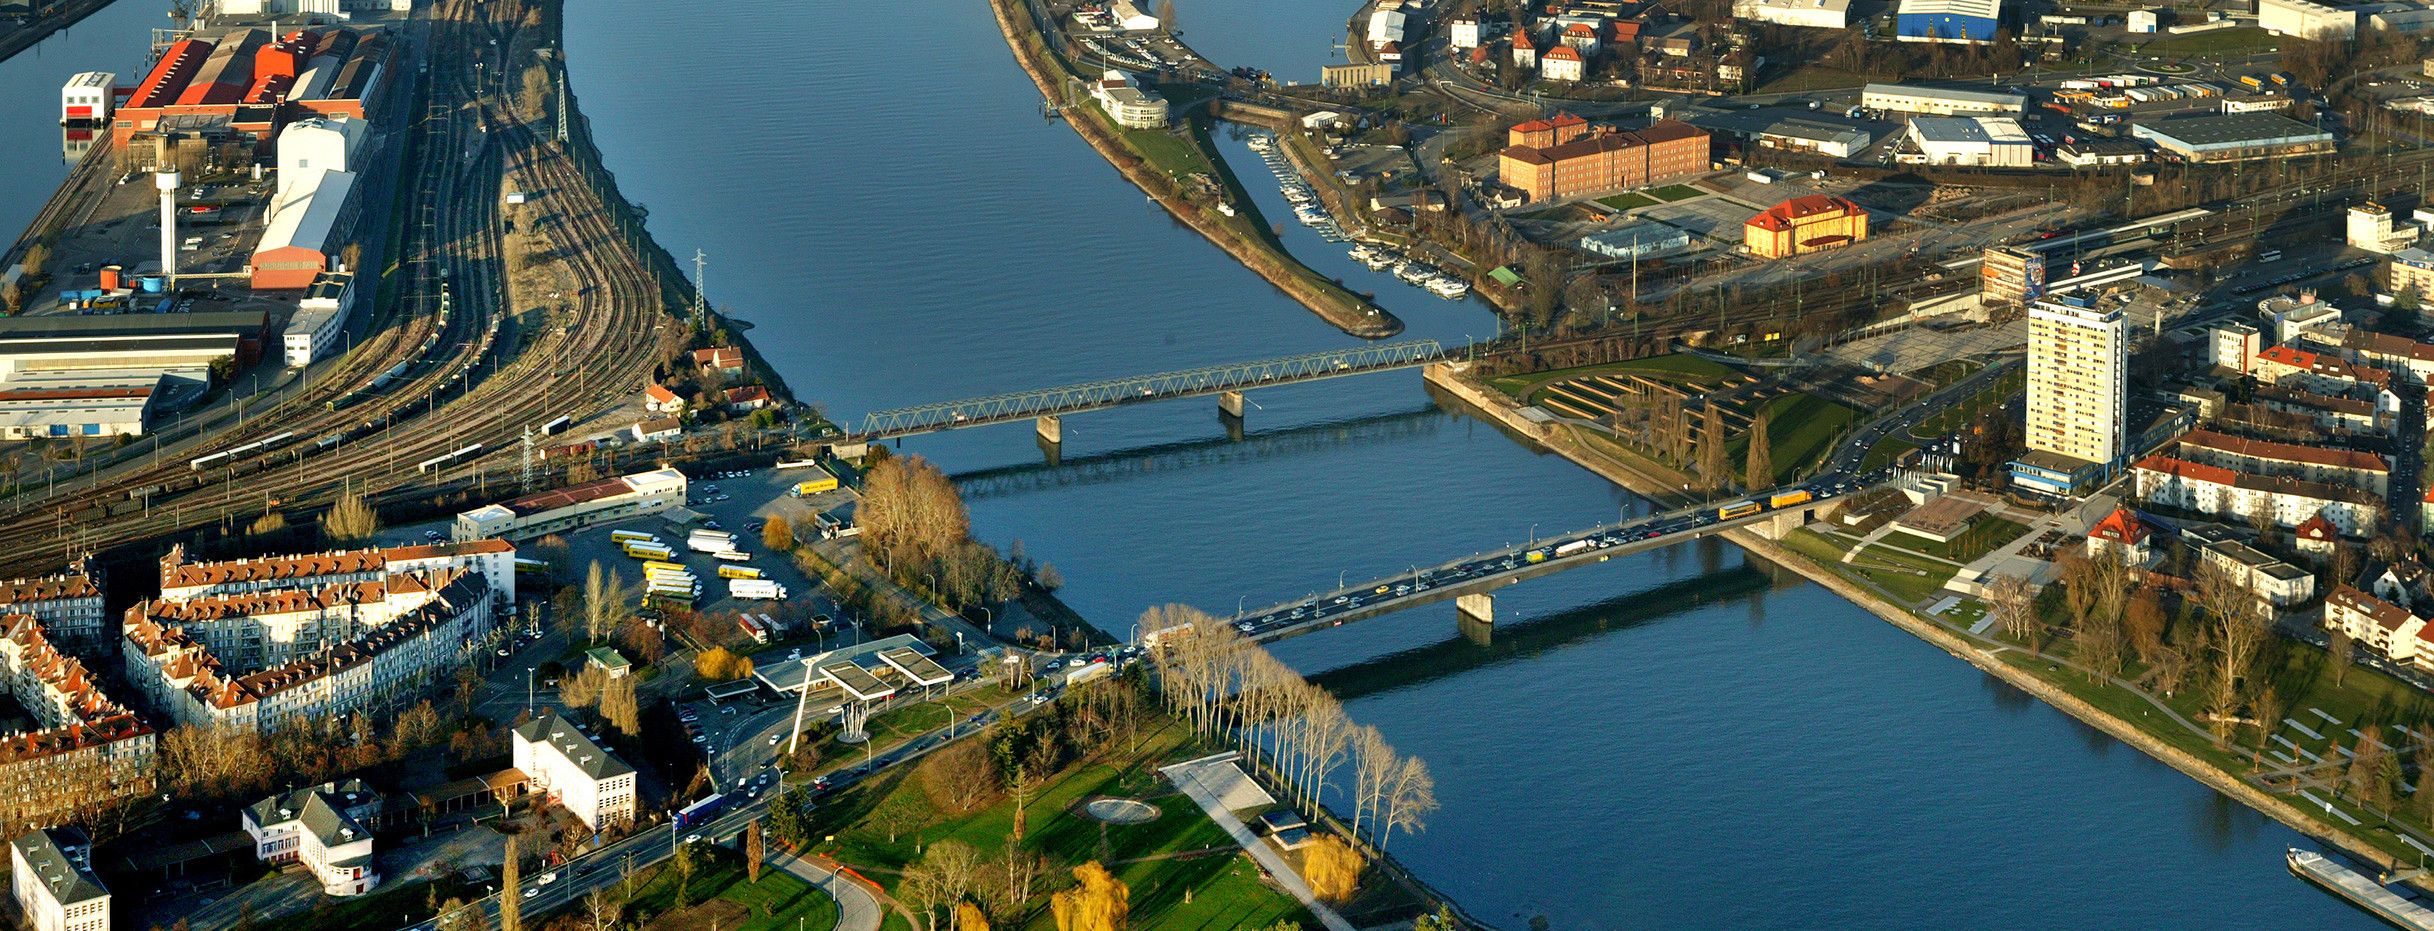 Die Europabrücke über den Rhein zwischen Kehl und Straßburg (Bild: Manfred Grohe)